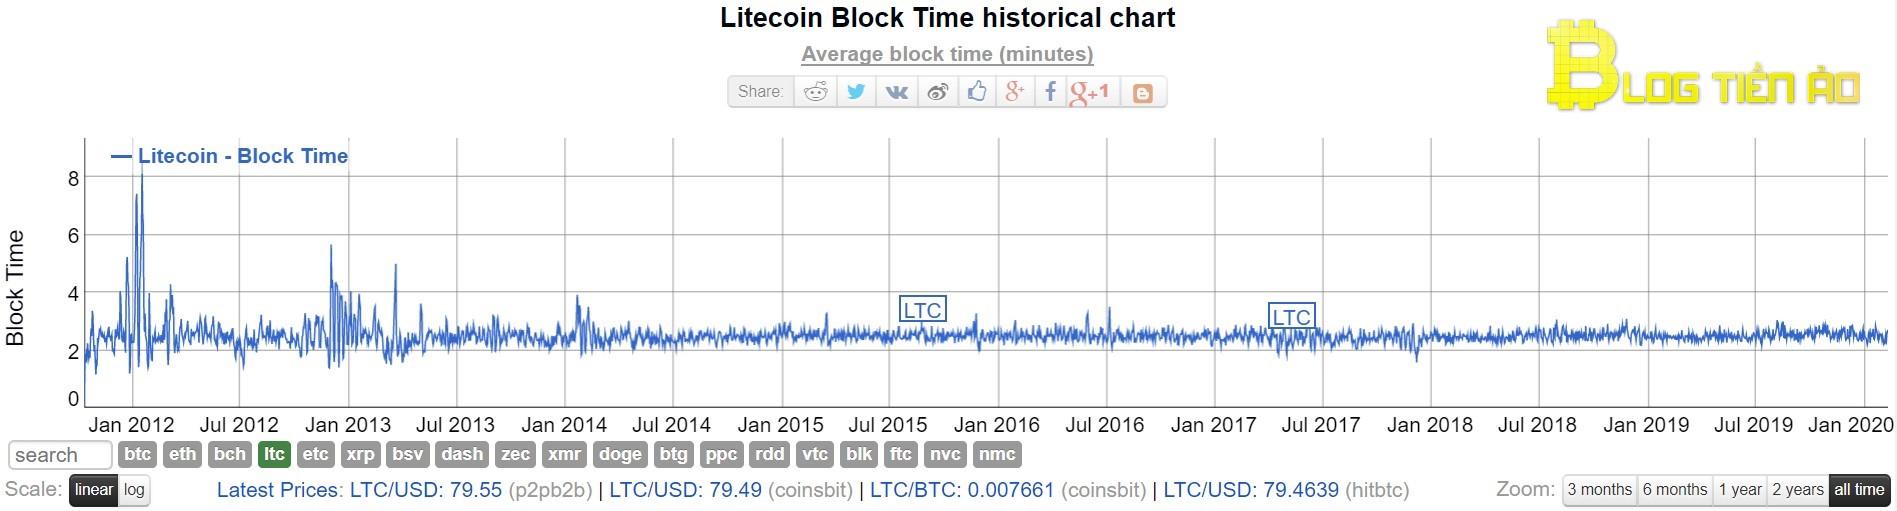 Heure de création du bloc de Litecoin